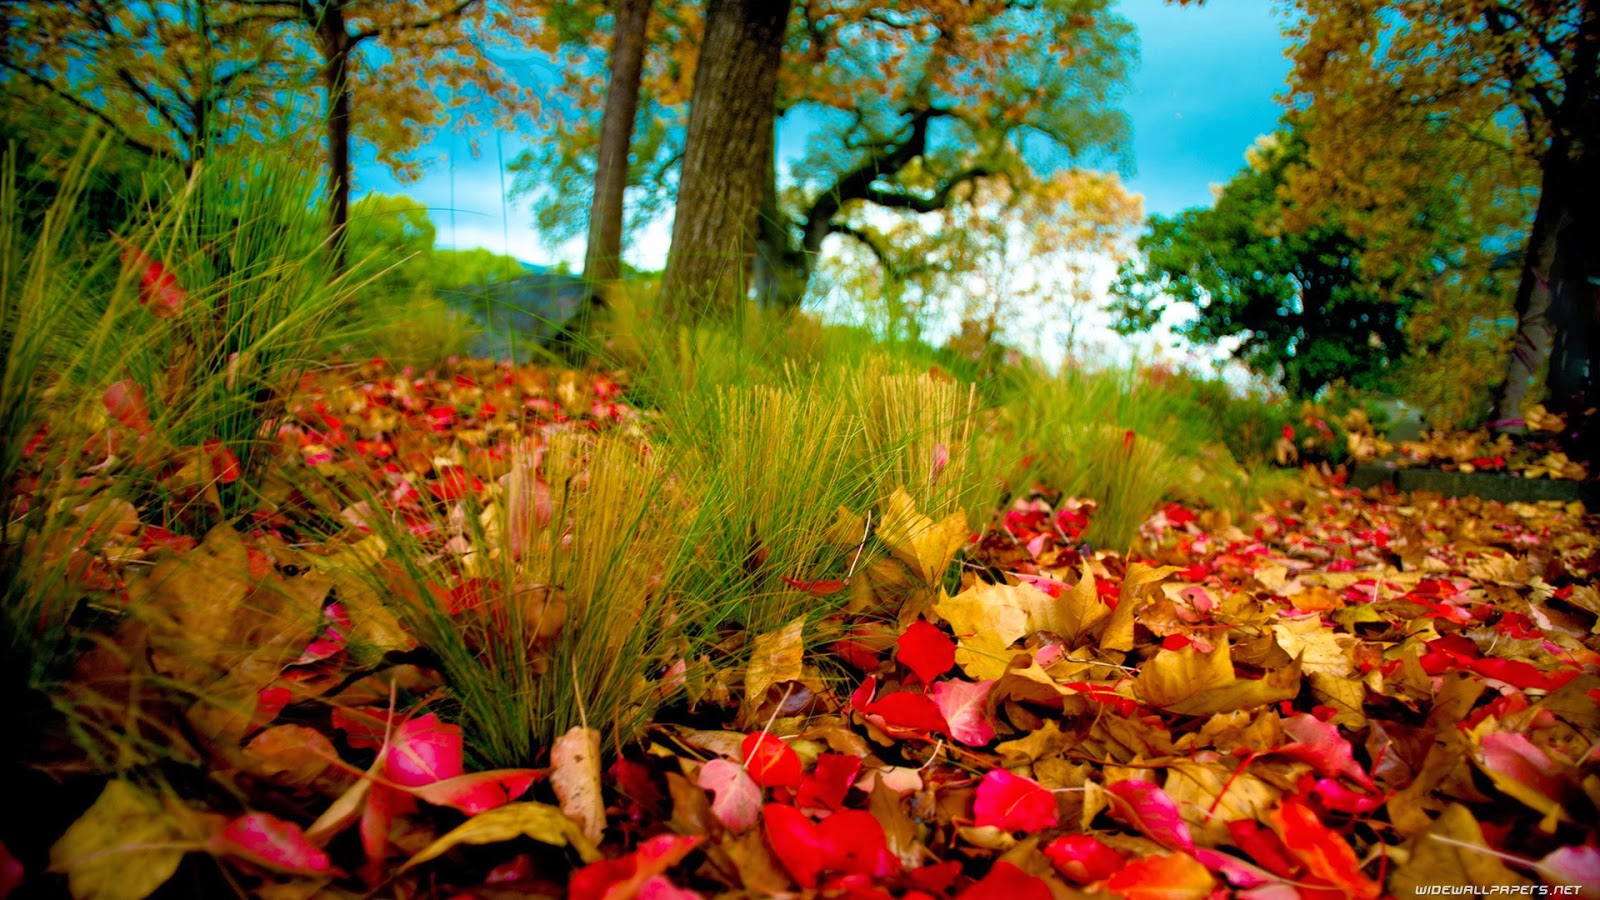 Hình nền thiên nhiên HD mùa thu: Mùa thu là mùa của sự lãng mạn và trầm lắng, khiến cho những người yêu thiên nhiên thích thú khám phá. Hình nền thiên nhiên HD mùa thu mang đến những cảnh quang tuyệt đẹp với những tầng sắc màu ấm áp và thân thiện. Hãy xem và trải nghiệm sự tuyệt vời của mùa thu qua hình nền thiên nhiên HD này. 